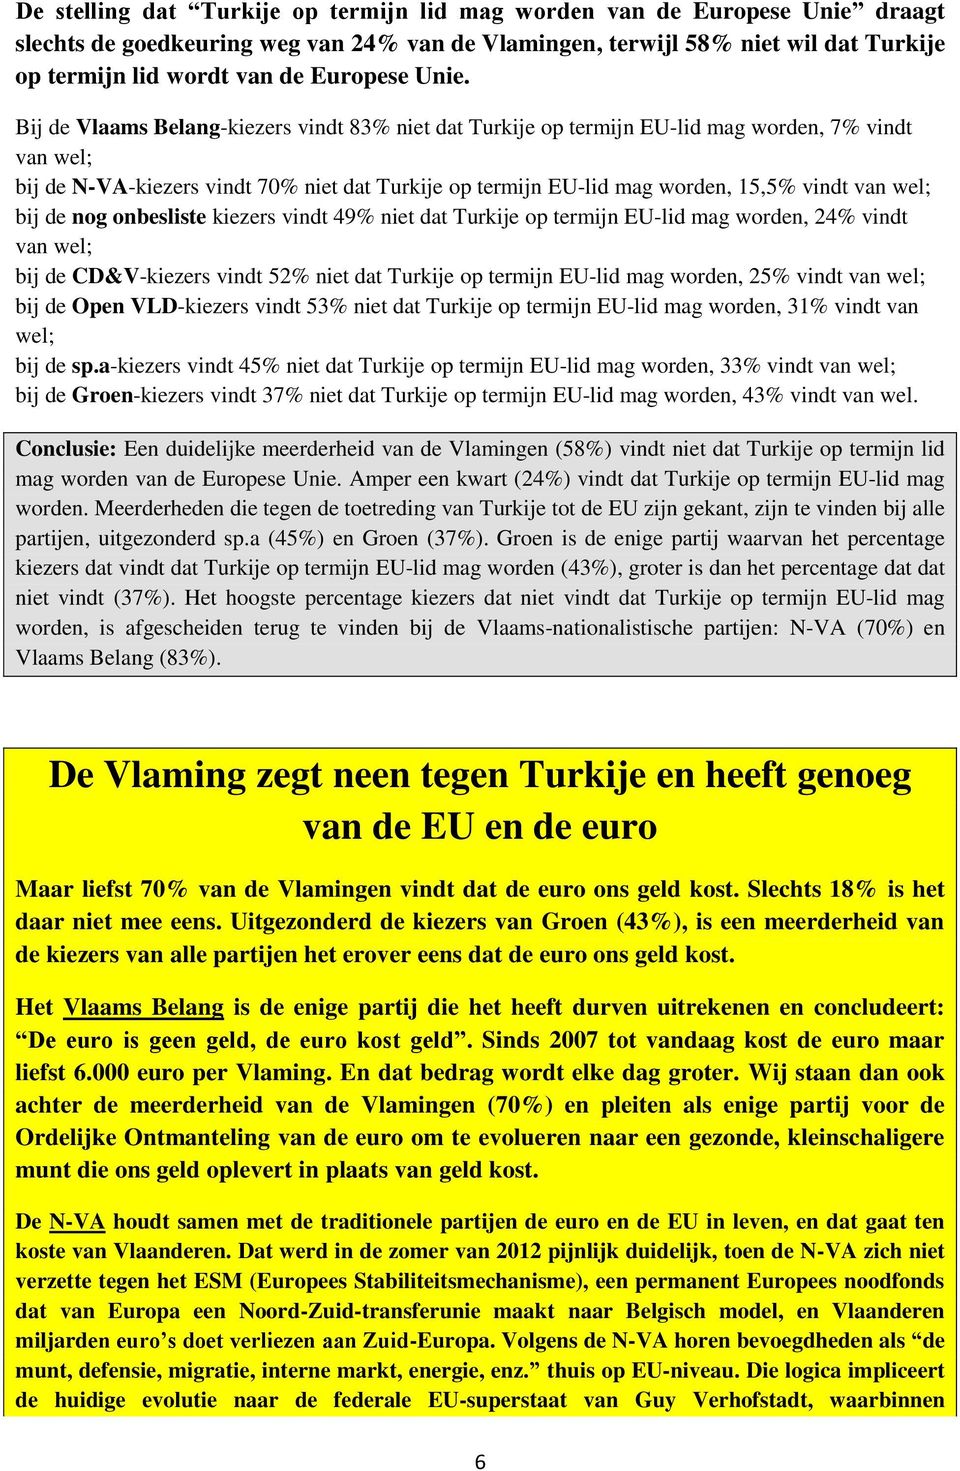 Bij de Vlaams Belang-kiezers vindt 83% niet dat Turkije op termijn EU-lid mag worden, 7% vindt van wel; bij de N-VA-kiezers vindt 70% niet dat Turkije op termijn EU-lid mag worden, 15,5% vindt van